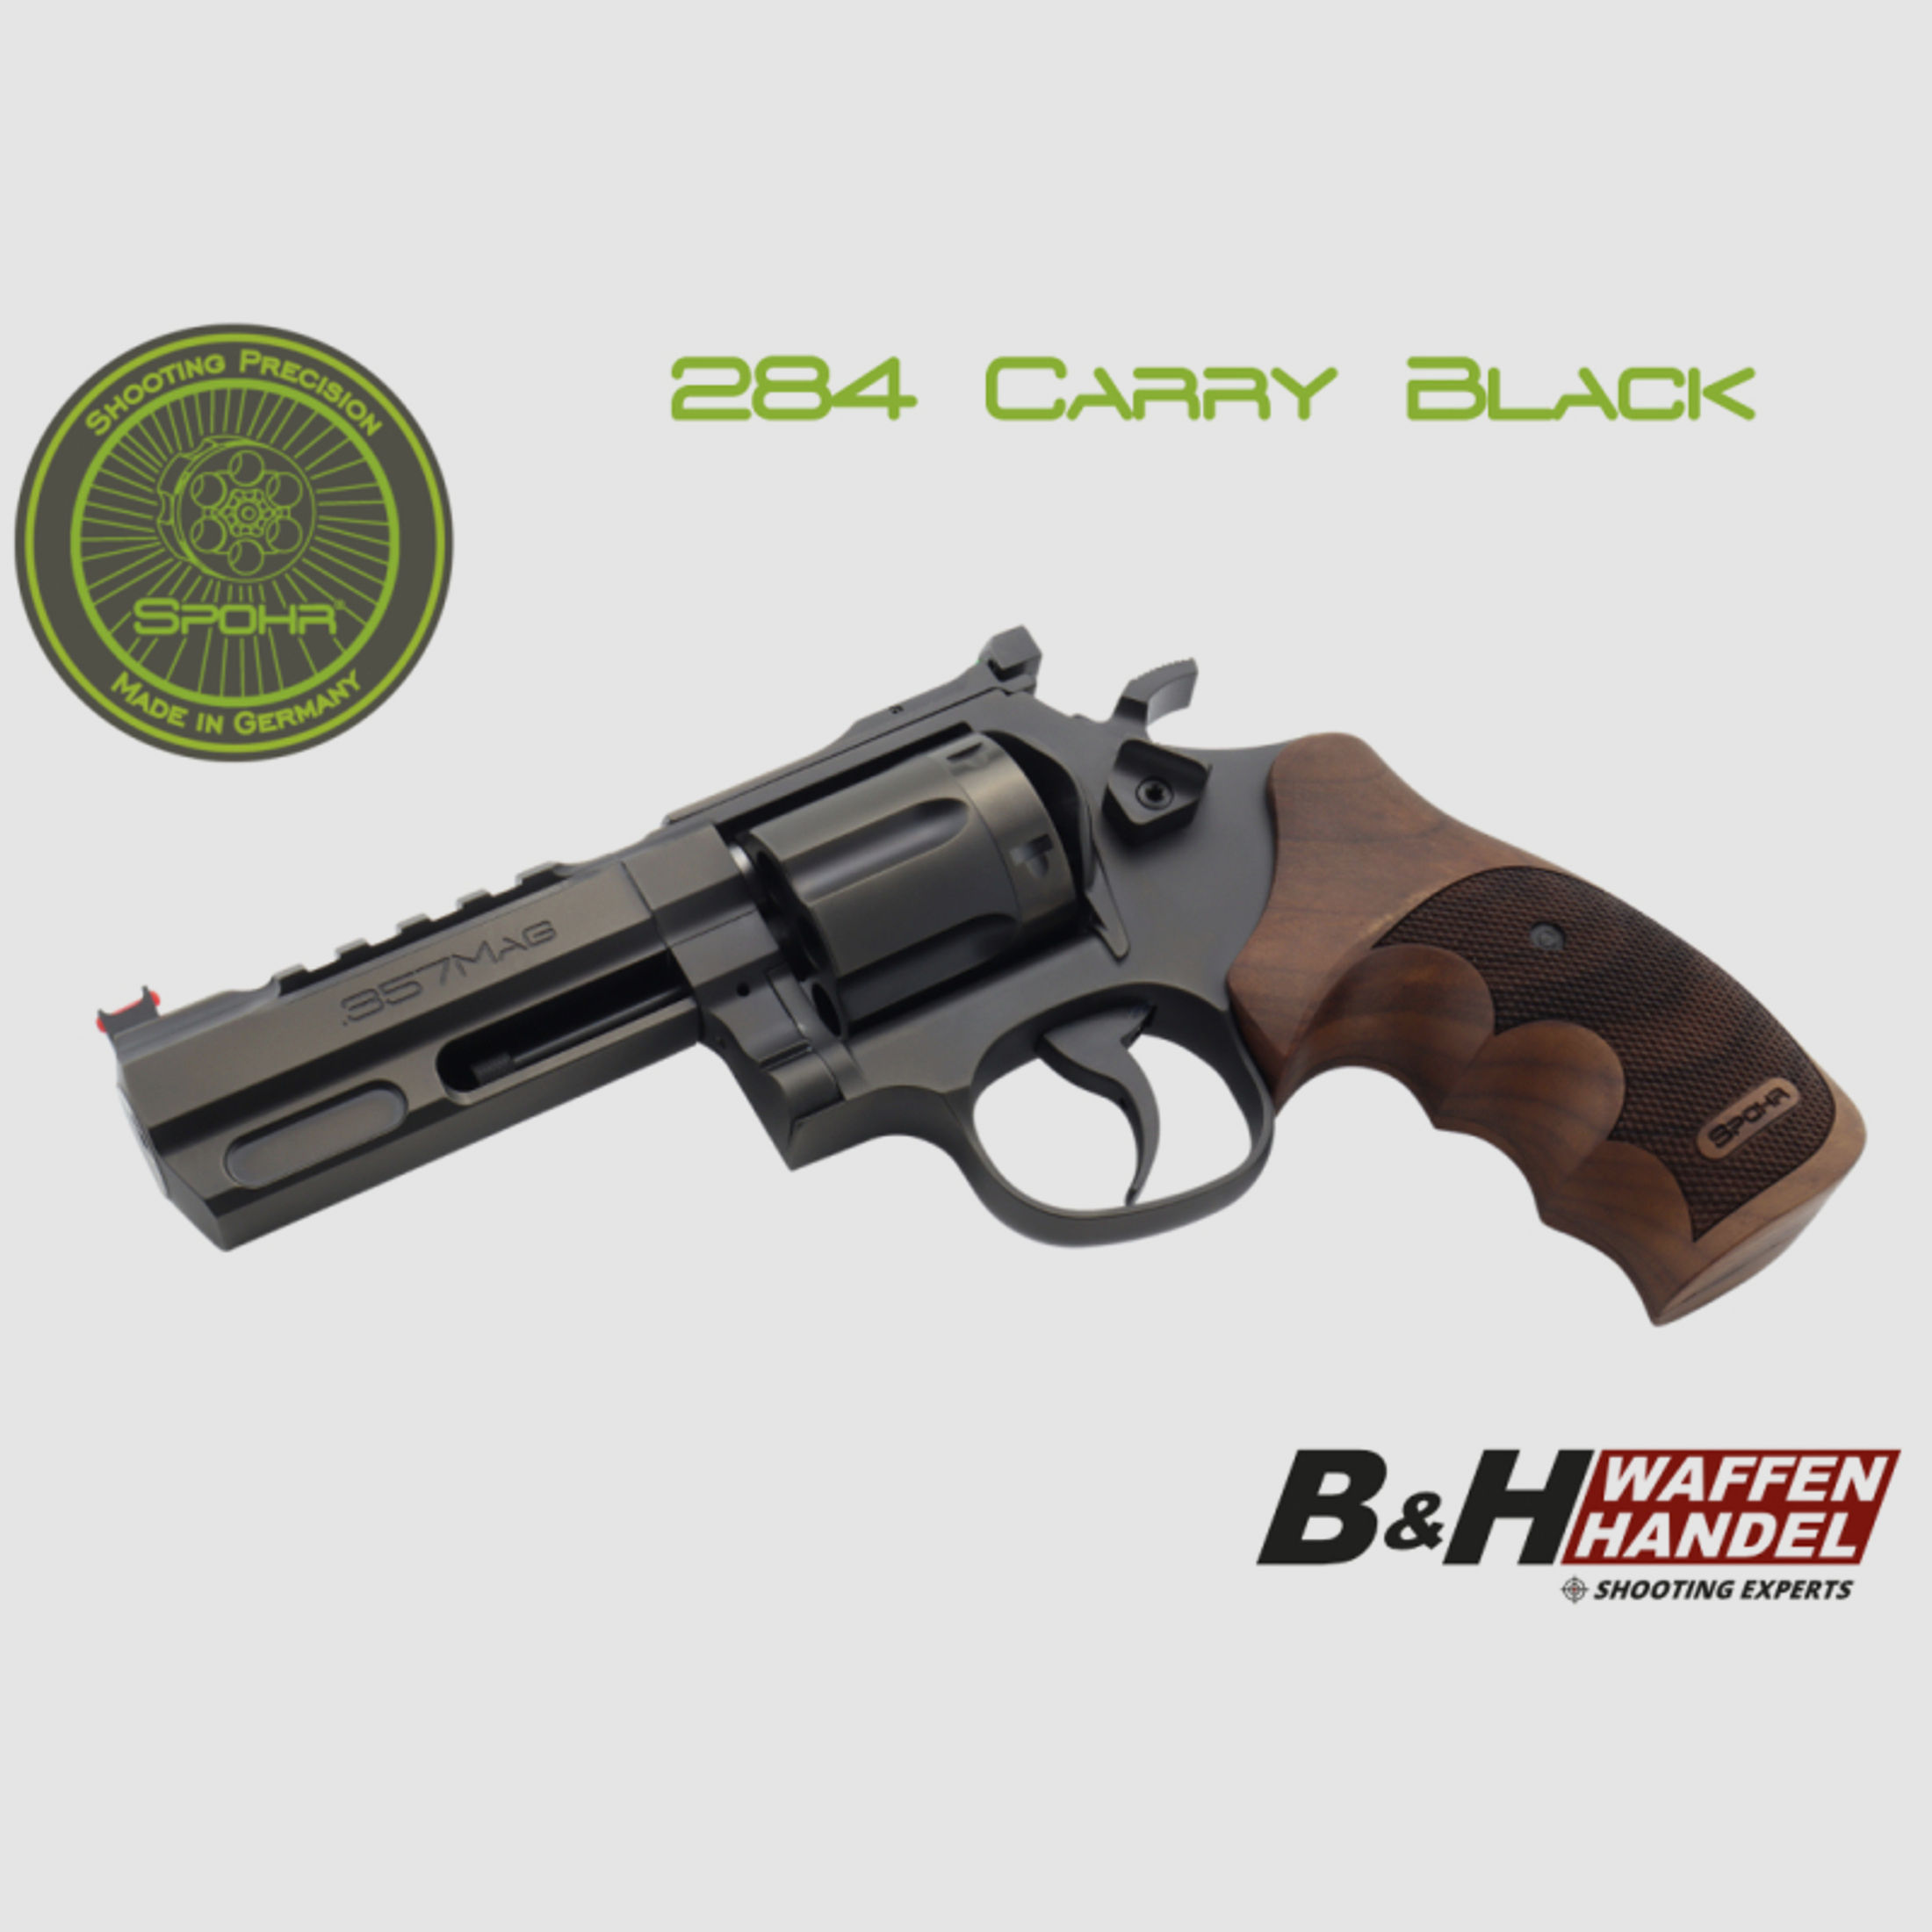 Neuwaffe: SPOHR 284 Carry Black 4" Revolver .357 Magnum schwarz beschichtet Made in Germany 4 Zoll